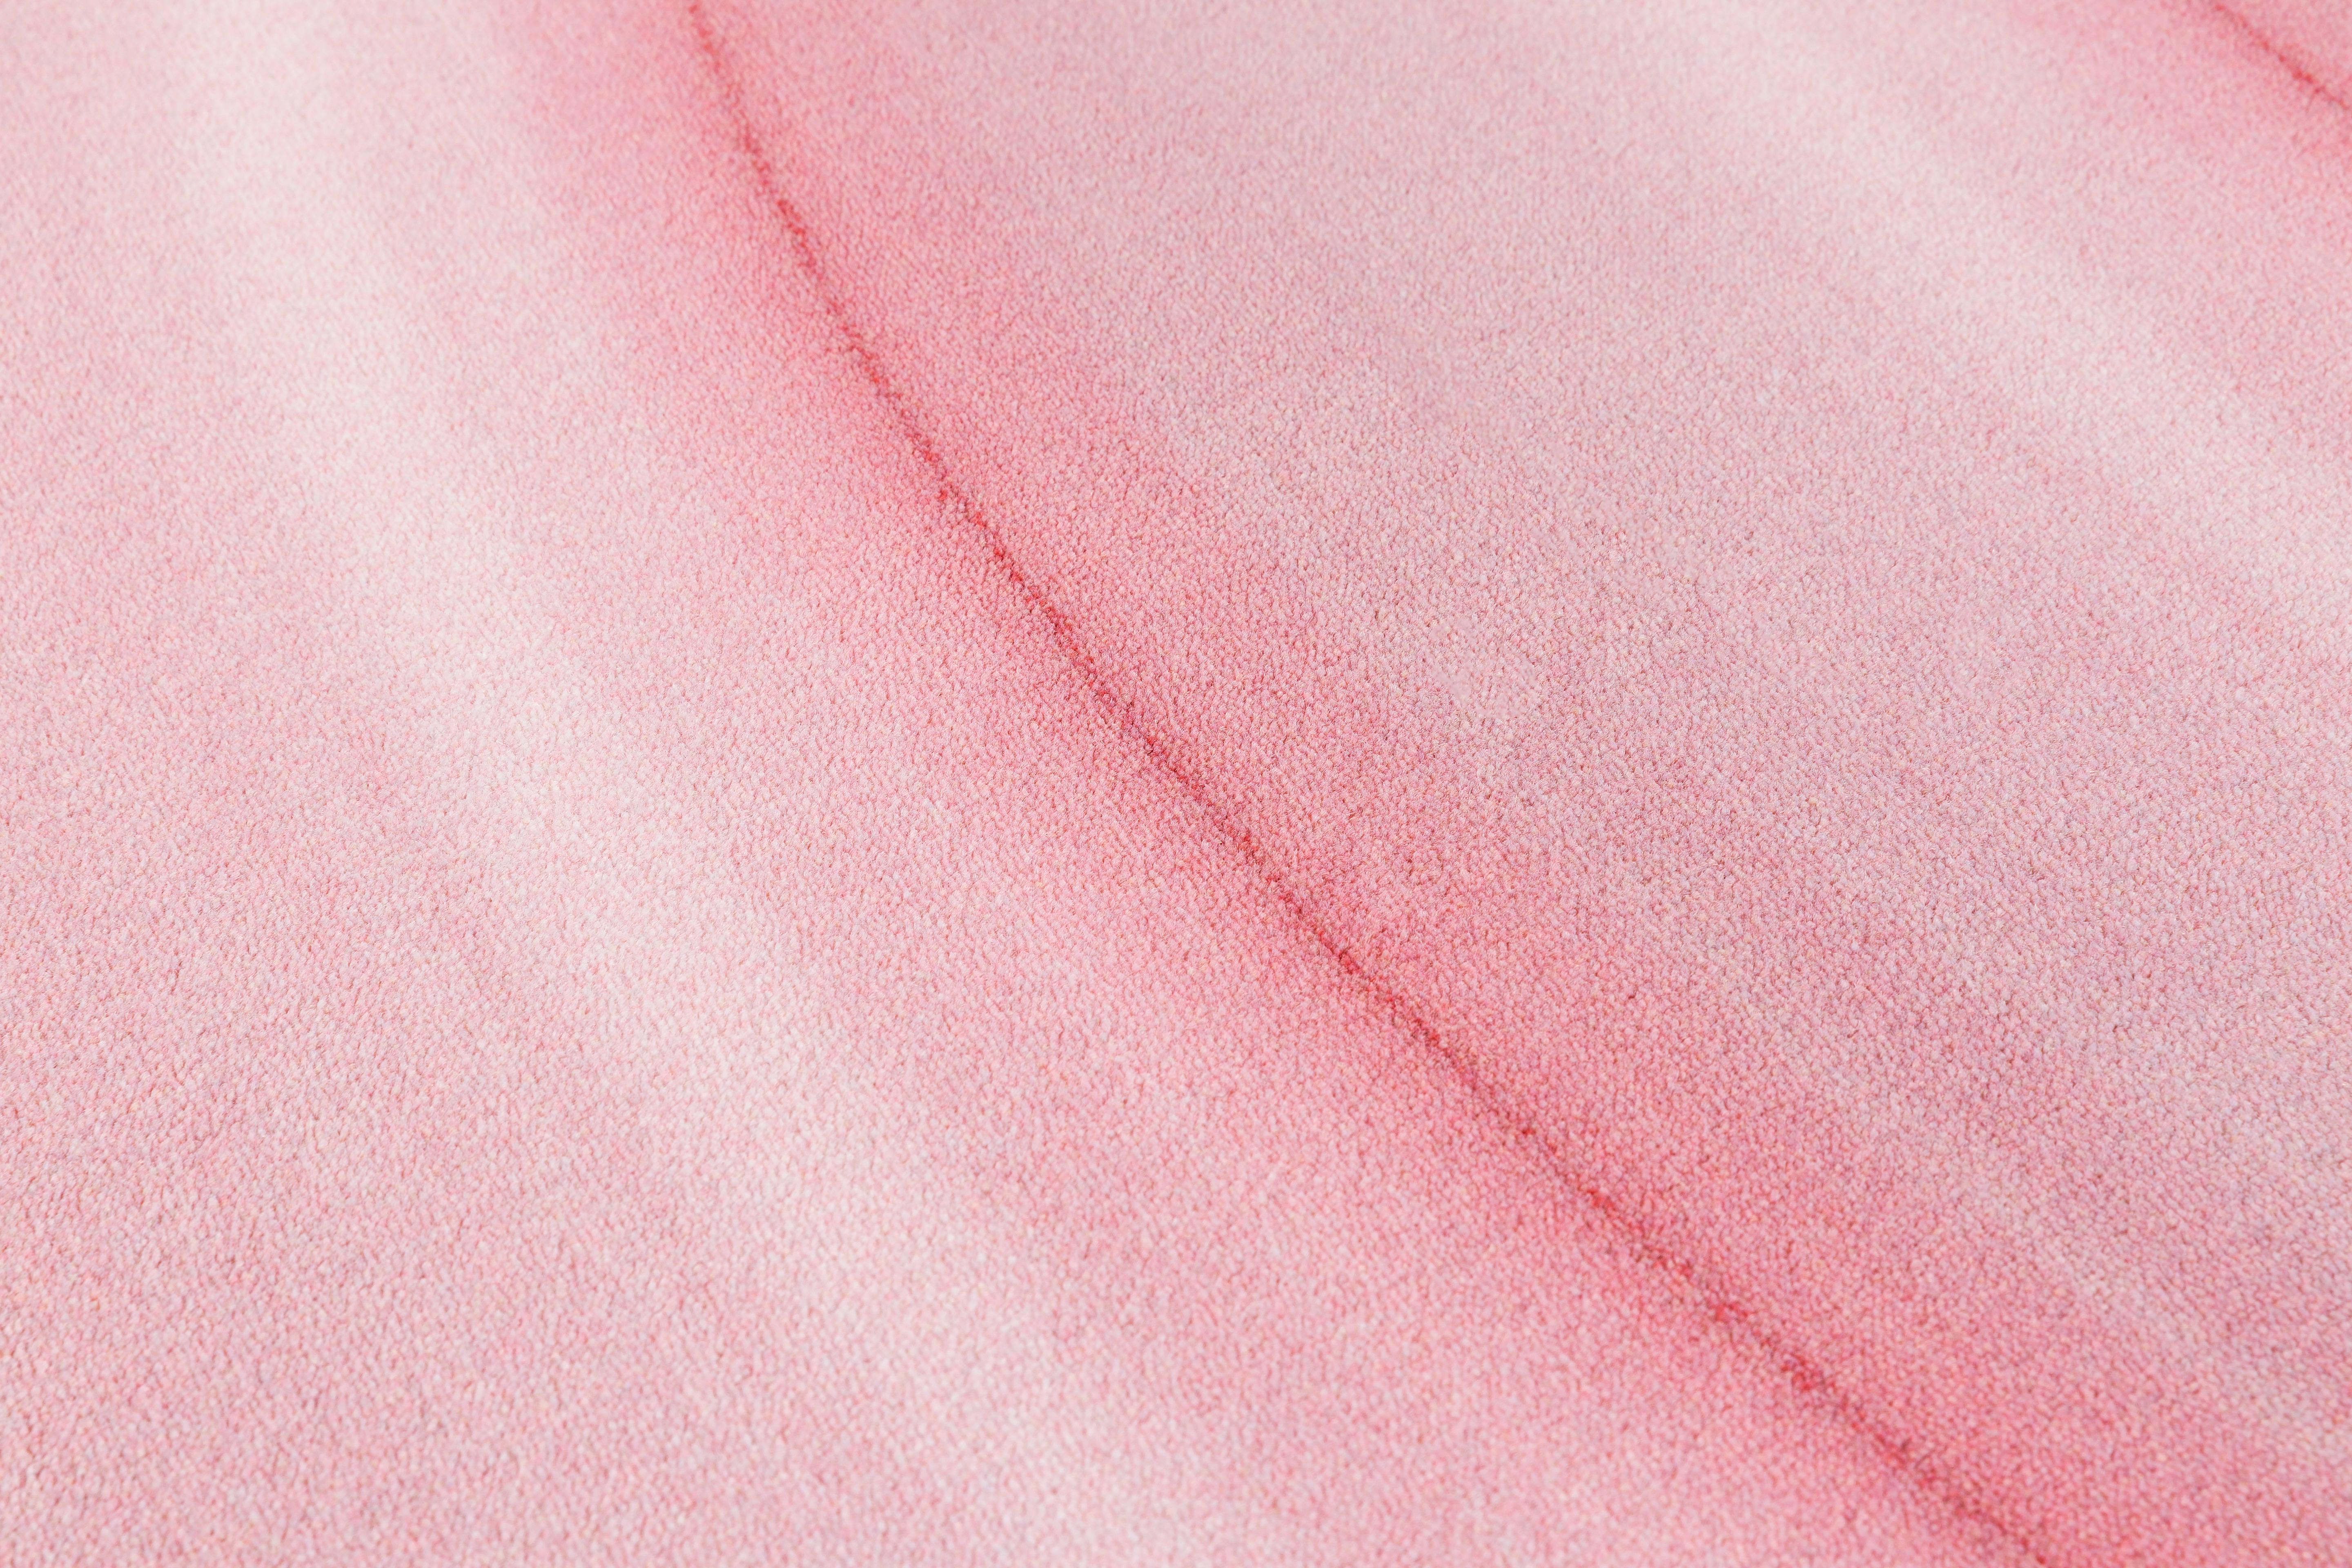 Moooi kleiner Ripples Teppich in rosa mit weichem Garn Polyamid von Andrés Reisinger

Über Andrés Reisinger Andrés Reisinger schafft an der Schnittstelle von Kunst, Design und Regie eine Brücke zwischen dem Imaginären und dem Konkreten. Seine